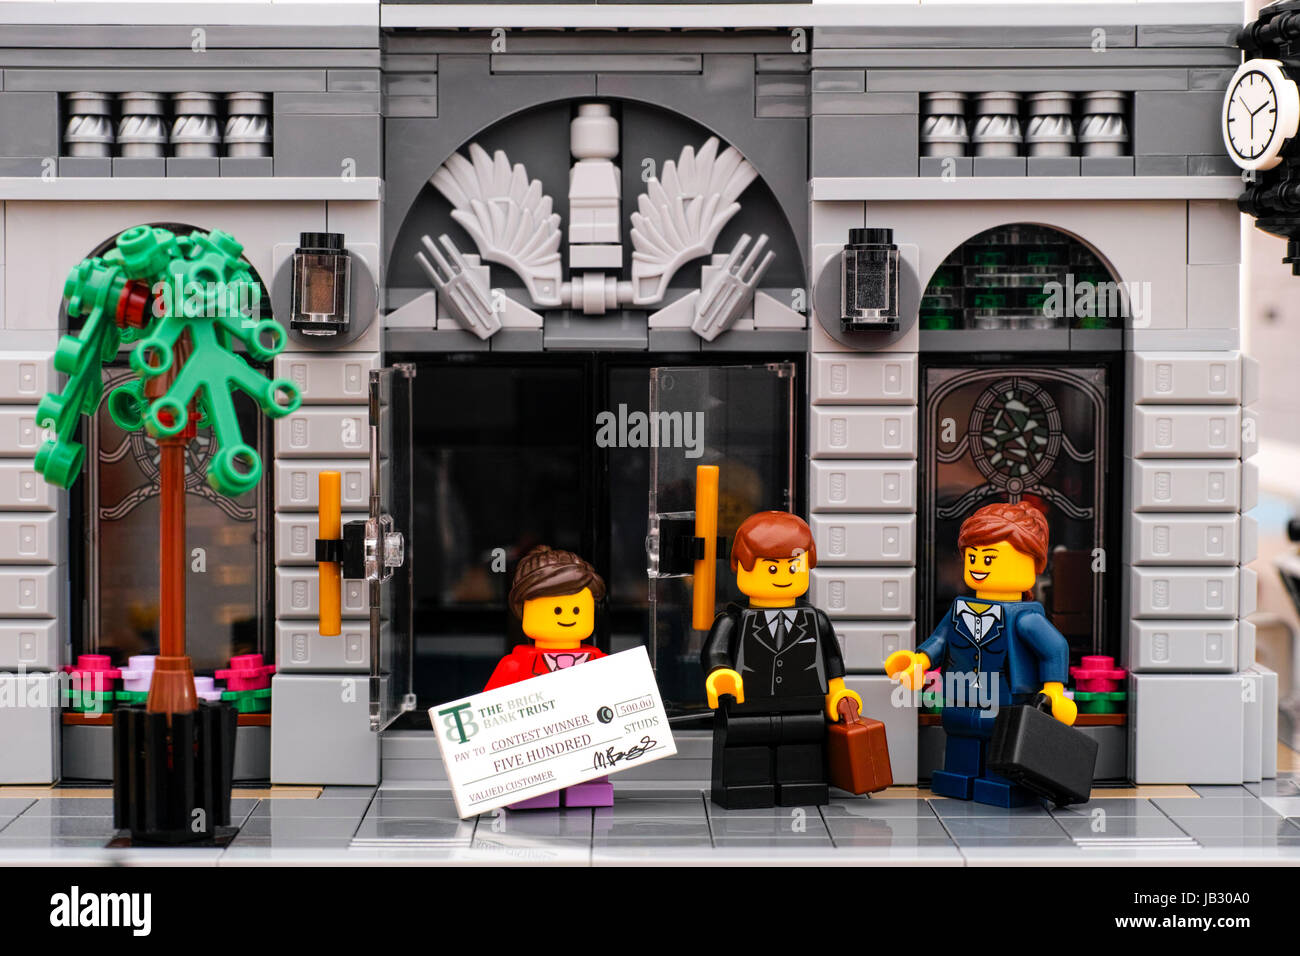 Tambow, Russische Föderation - 21. Januar 2017 Lego Bank. LEGO Mädchen mit Preis-Check kommt aus der Tür der Bank. LEGO Geschäftsmann und Geschäftsfrau sta Stockfoto